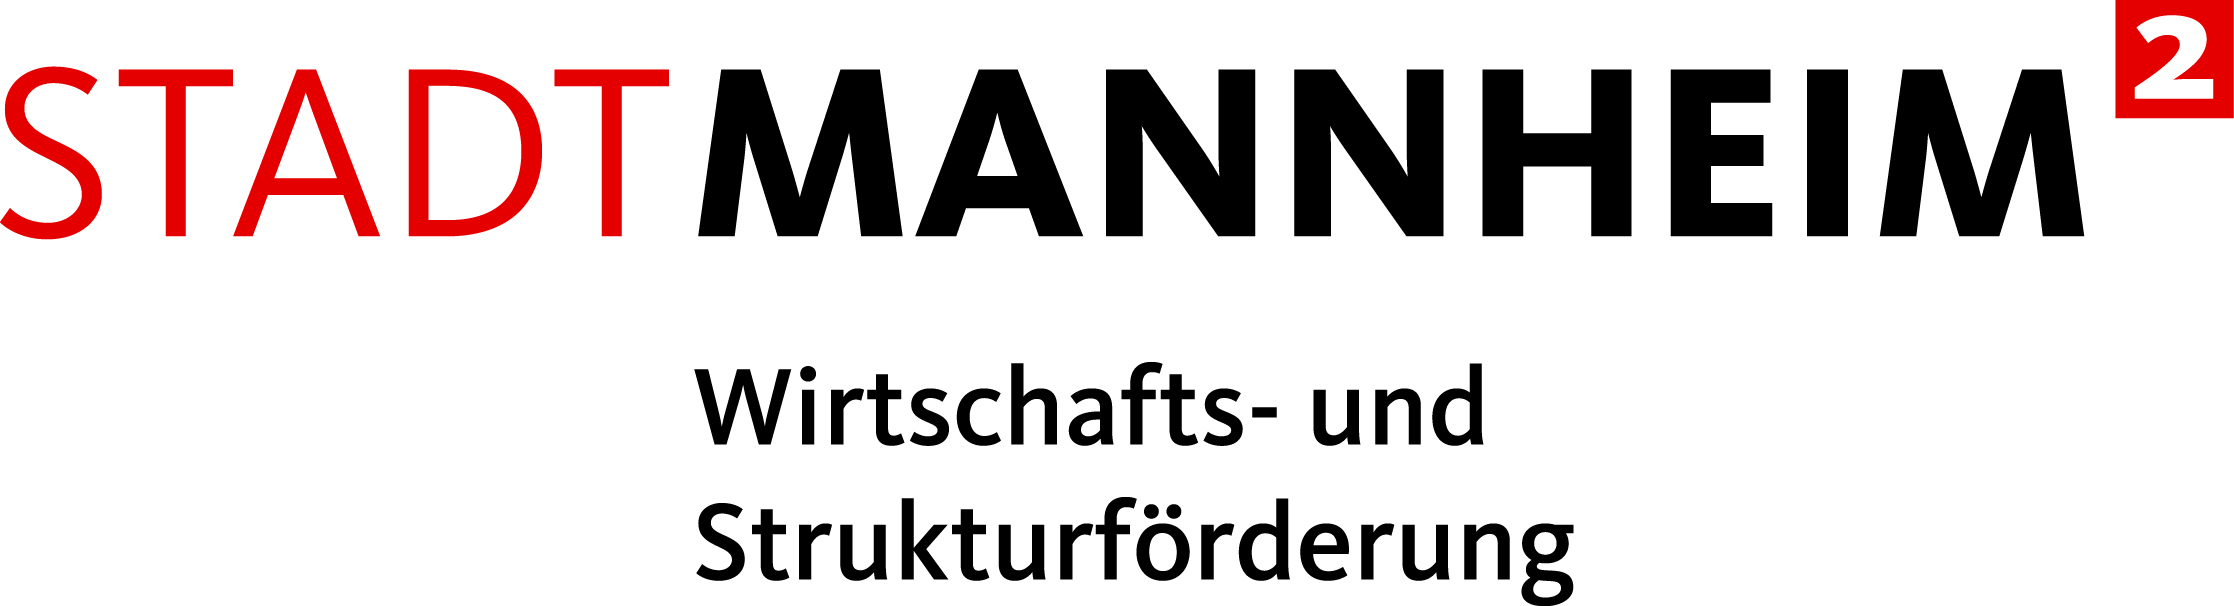 Stadt Mannheim Wirtschafts- und Strukturförderung